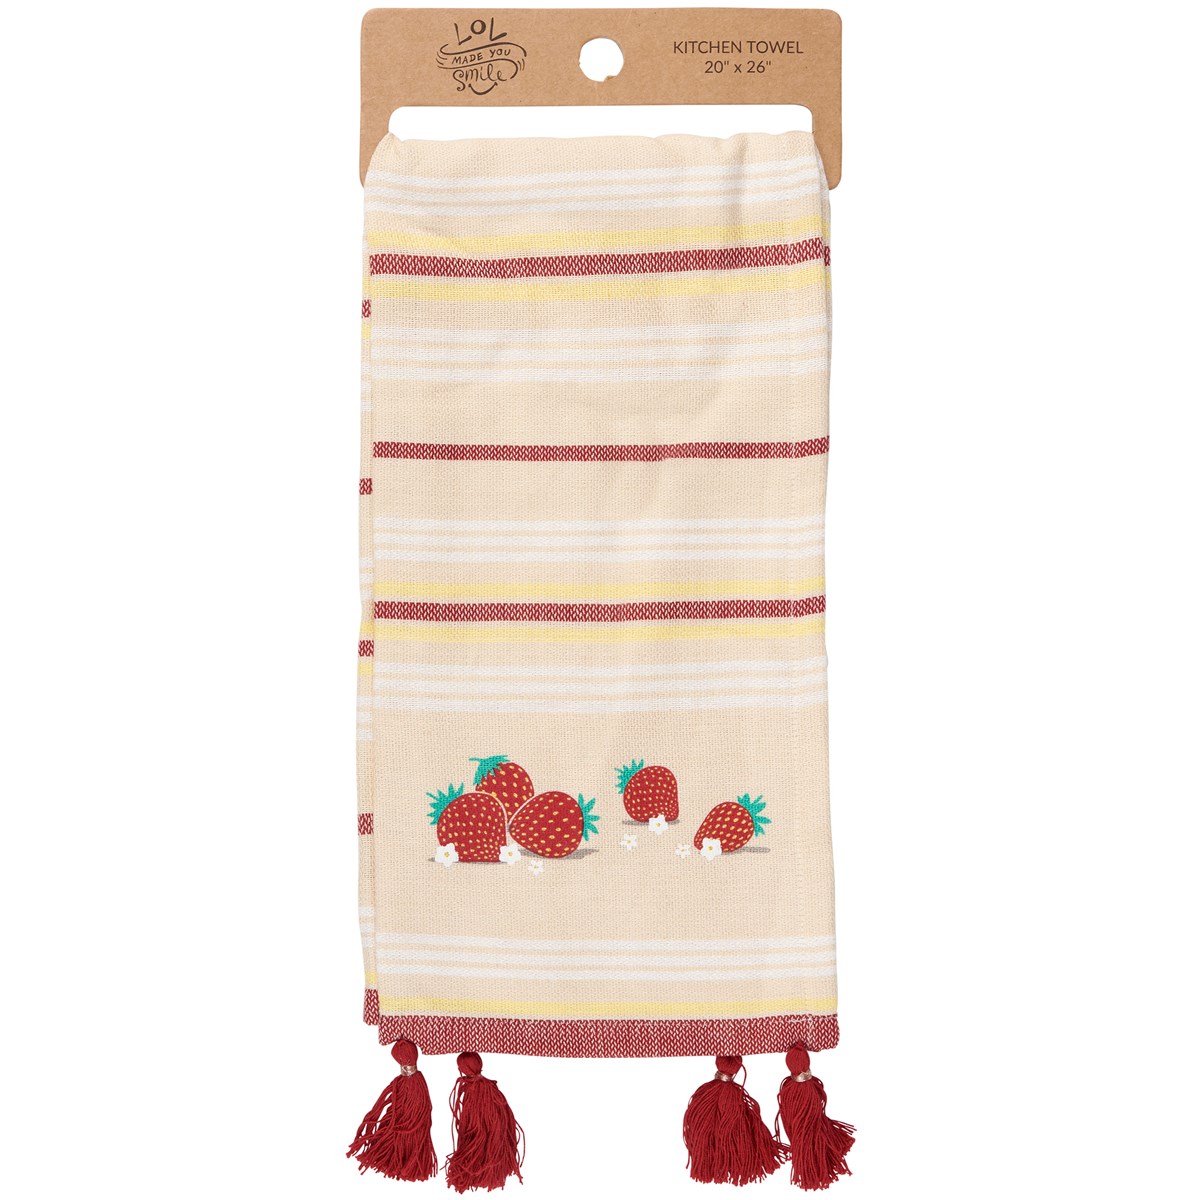 Strawberries Kitchen Towel - Cotton, Linen